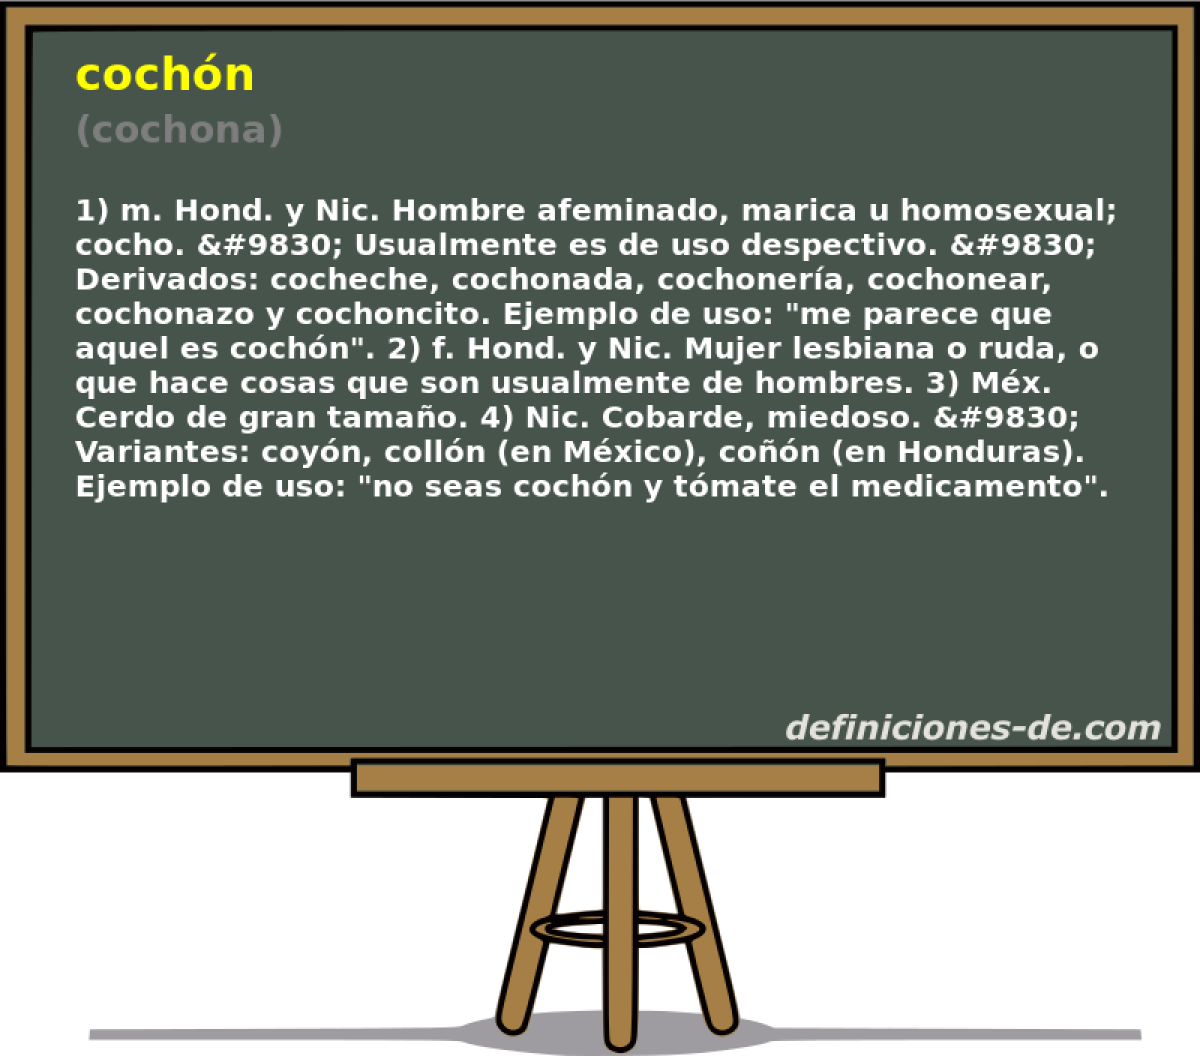 cochn (cochona)